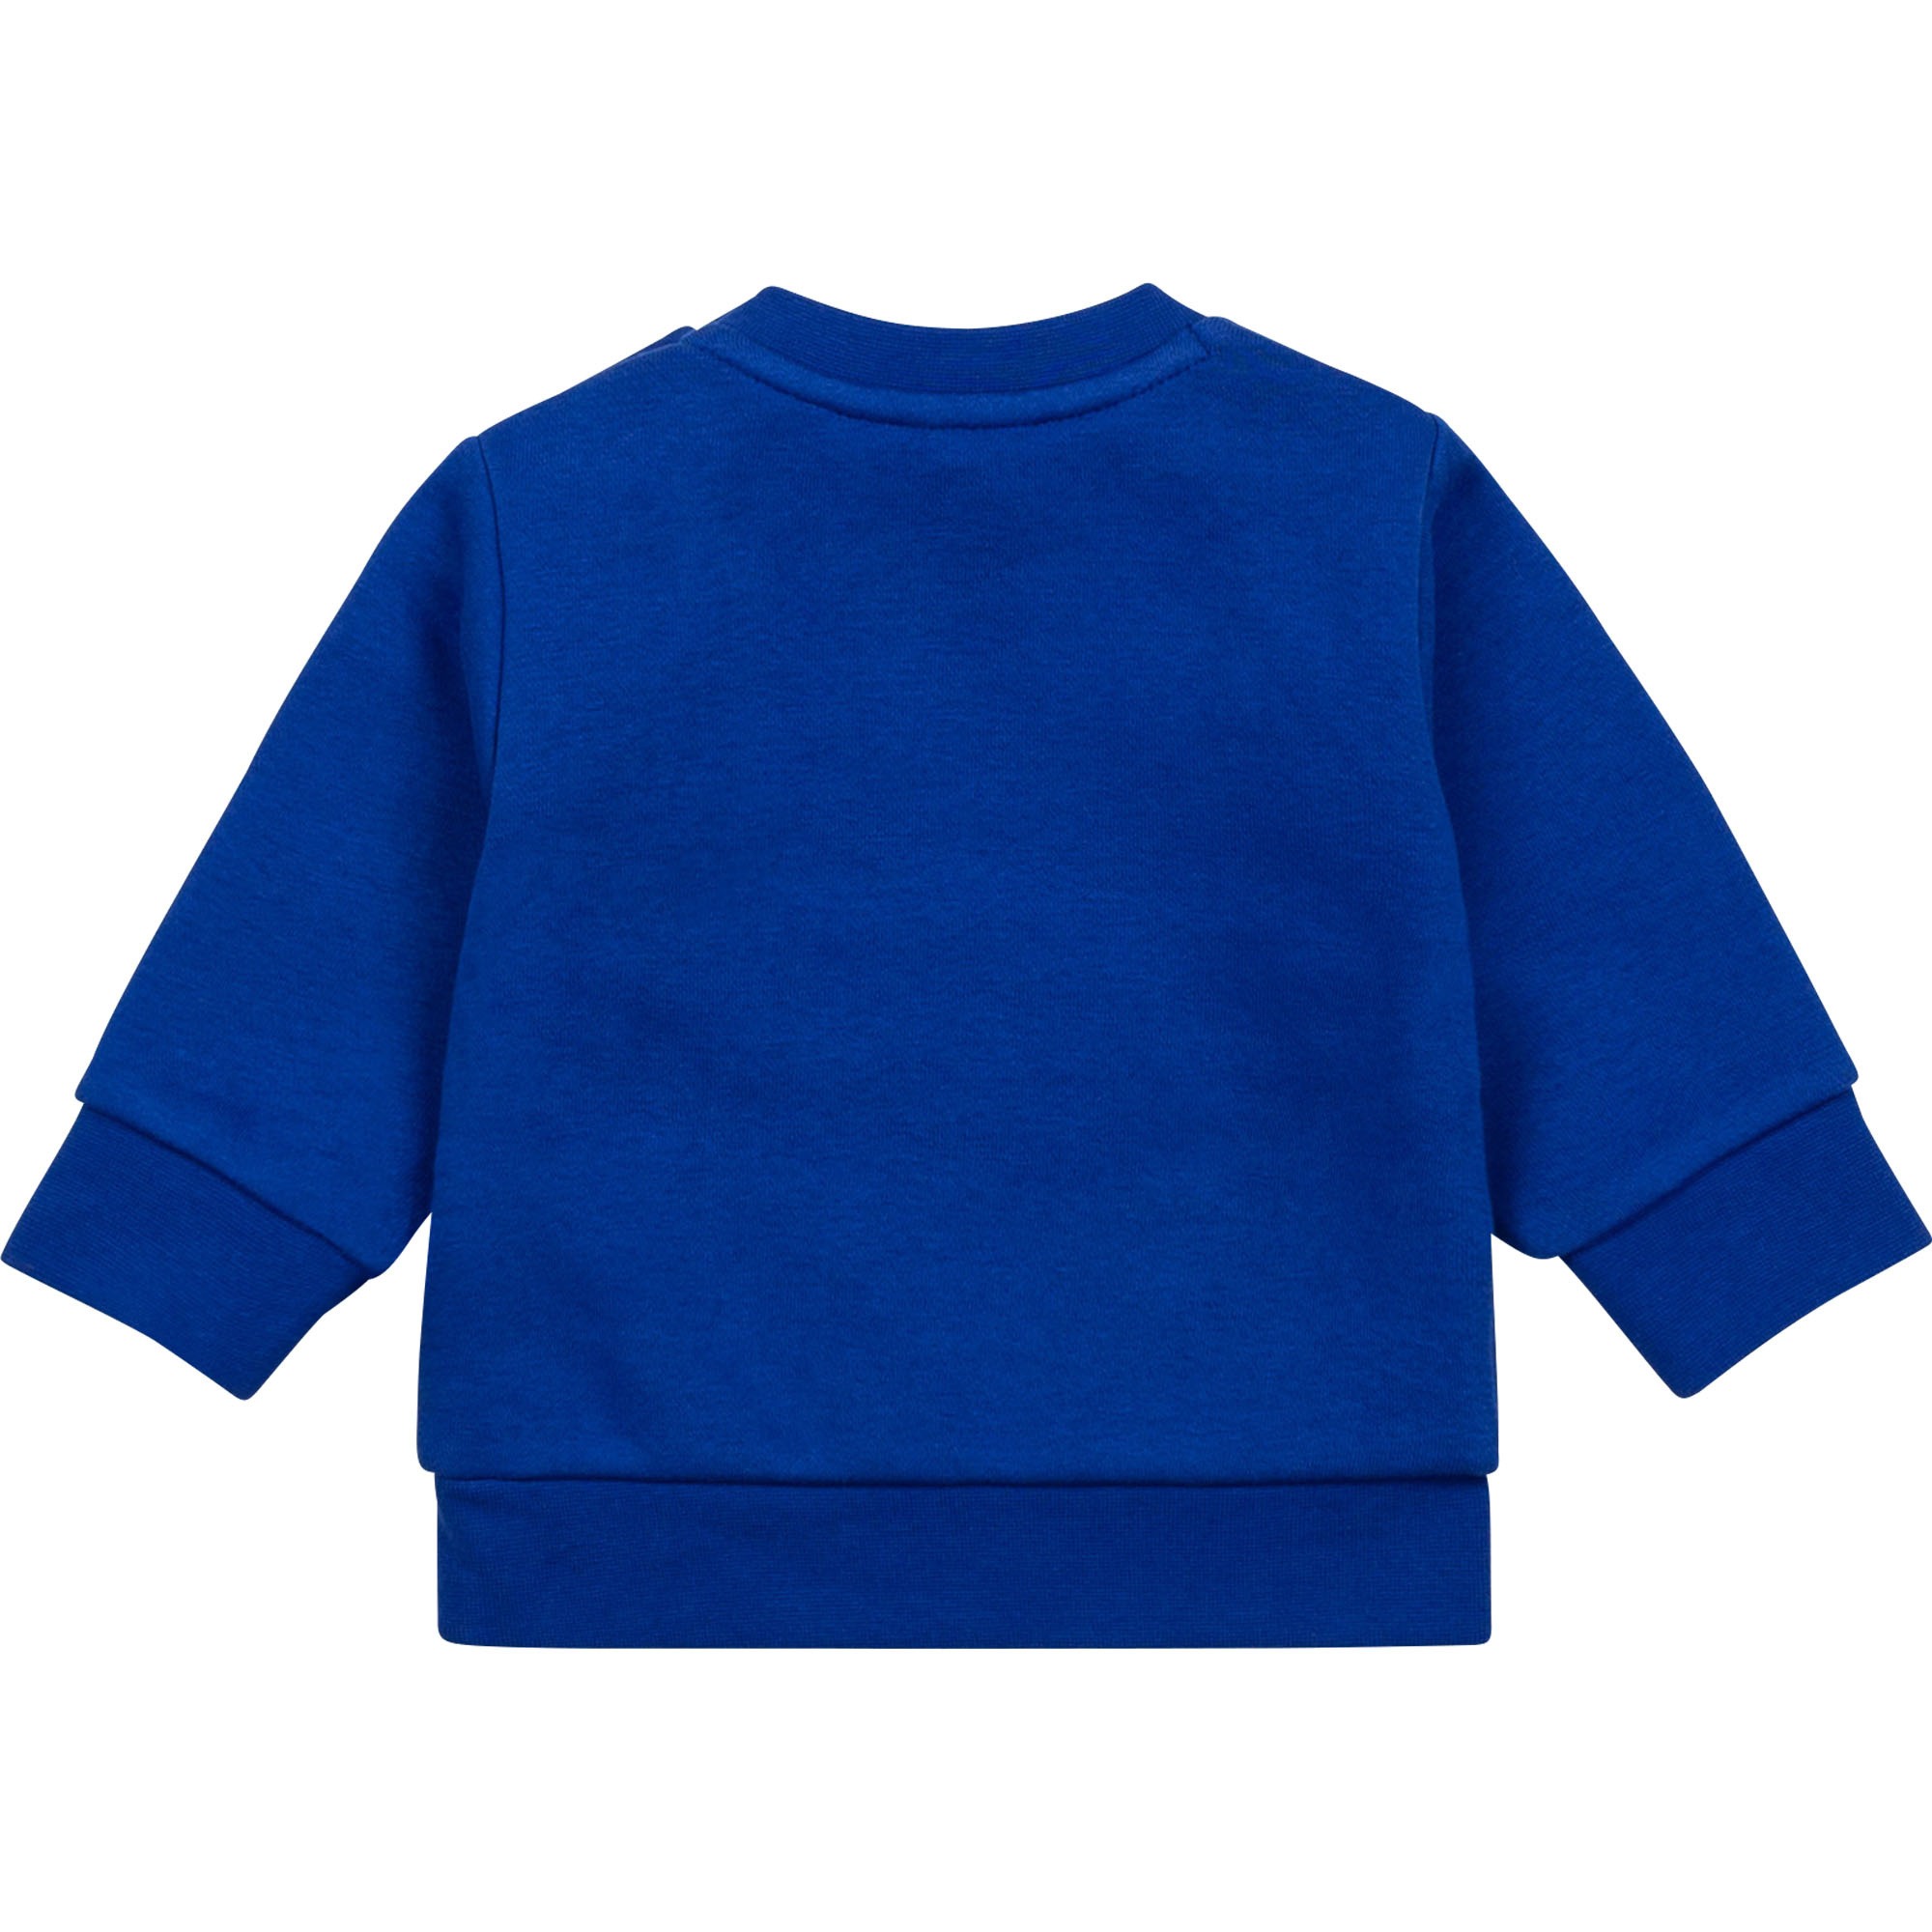 Brushed fleece sweatshirt BOSS for BOY